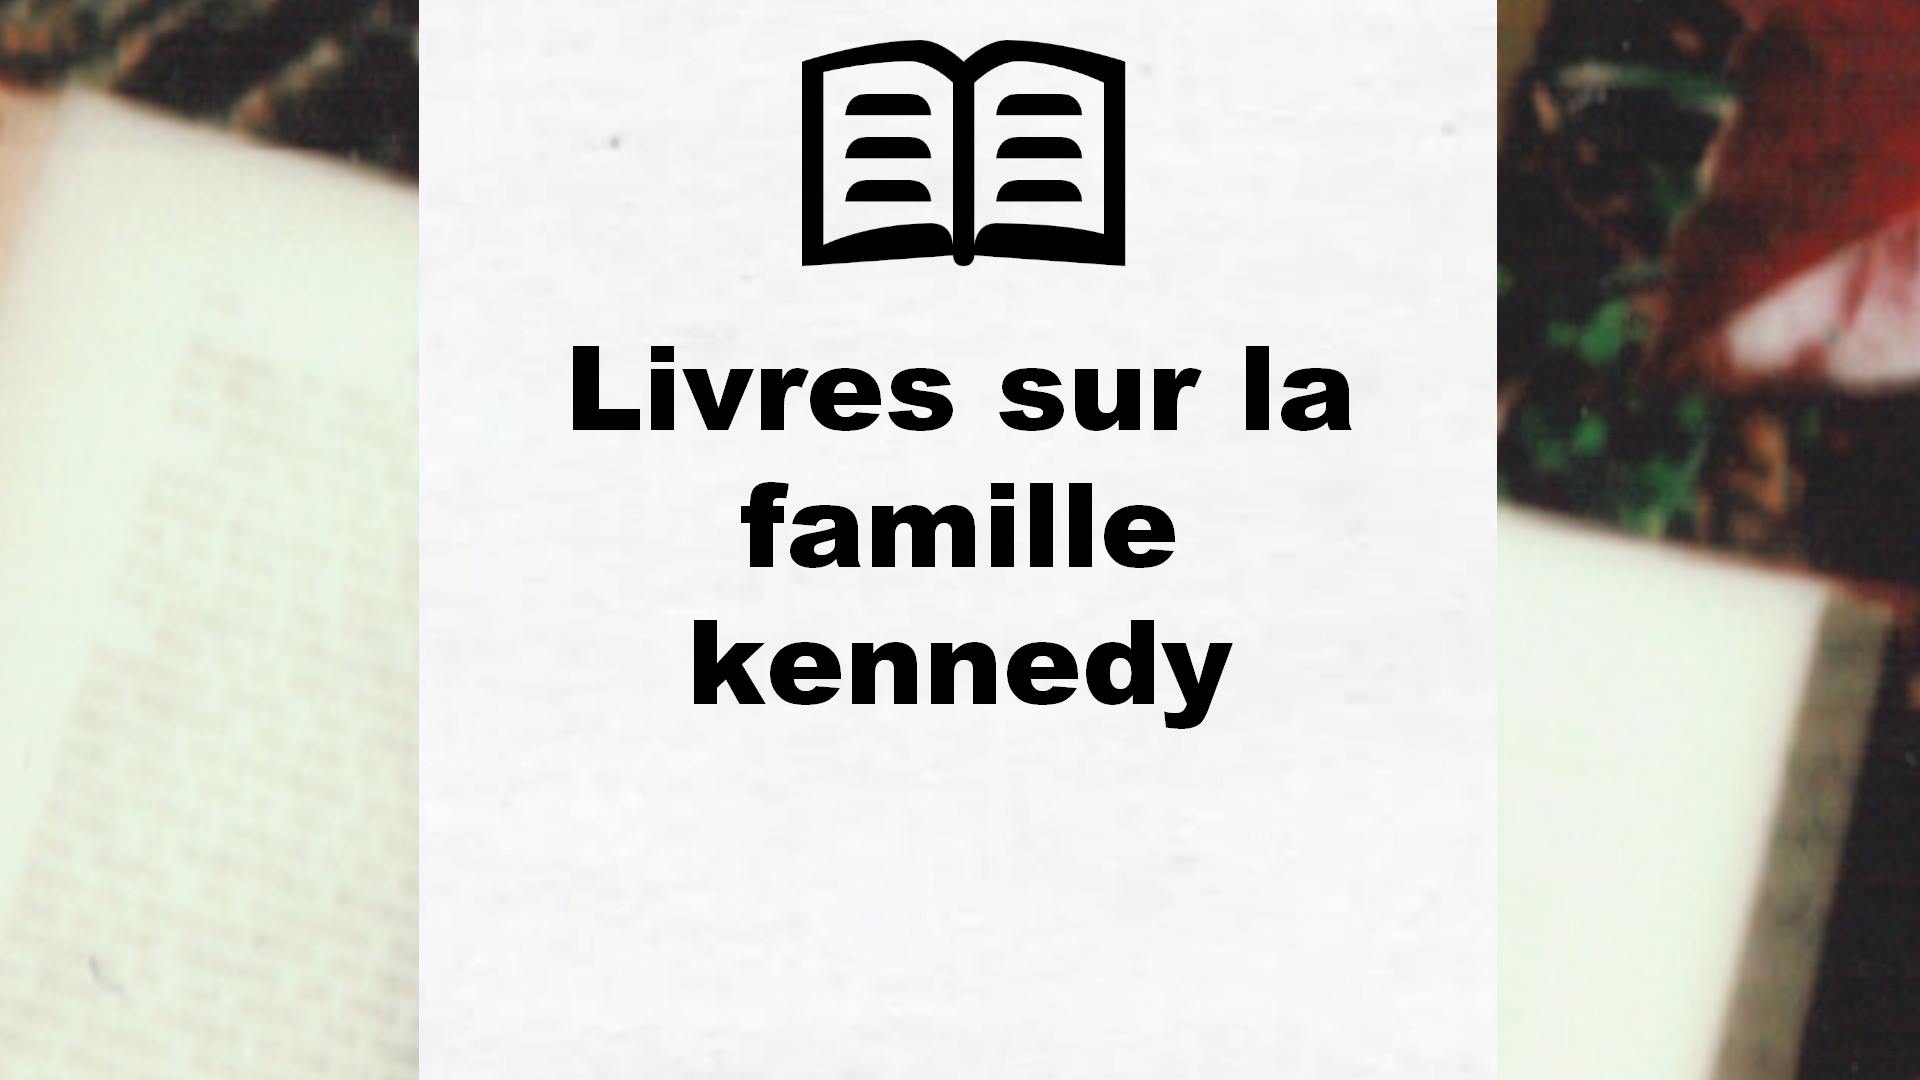 Livres sur la famille kennedy